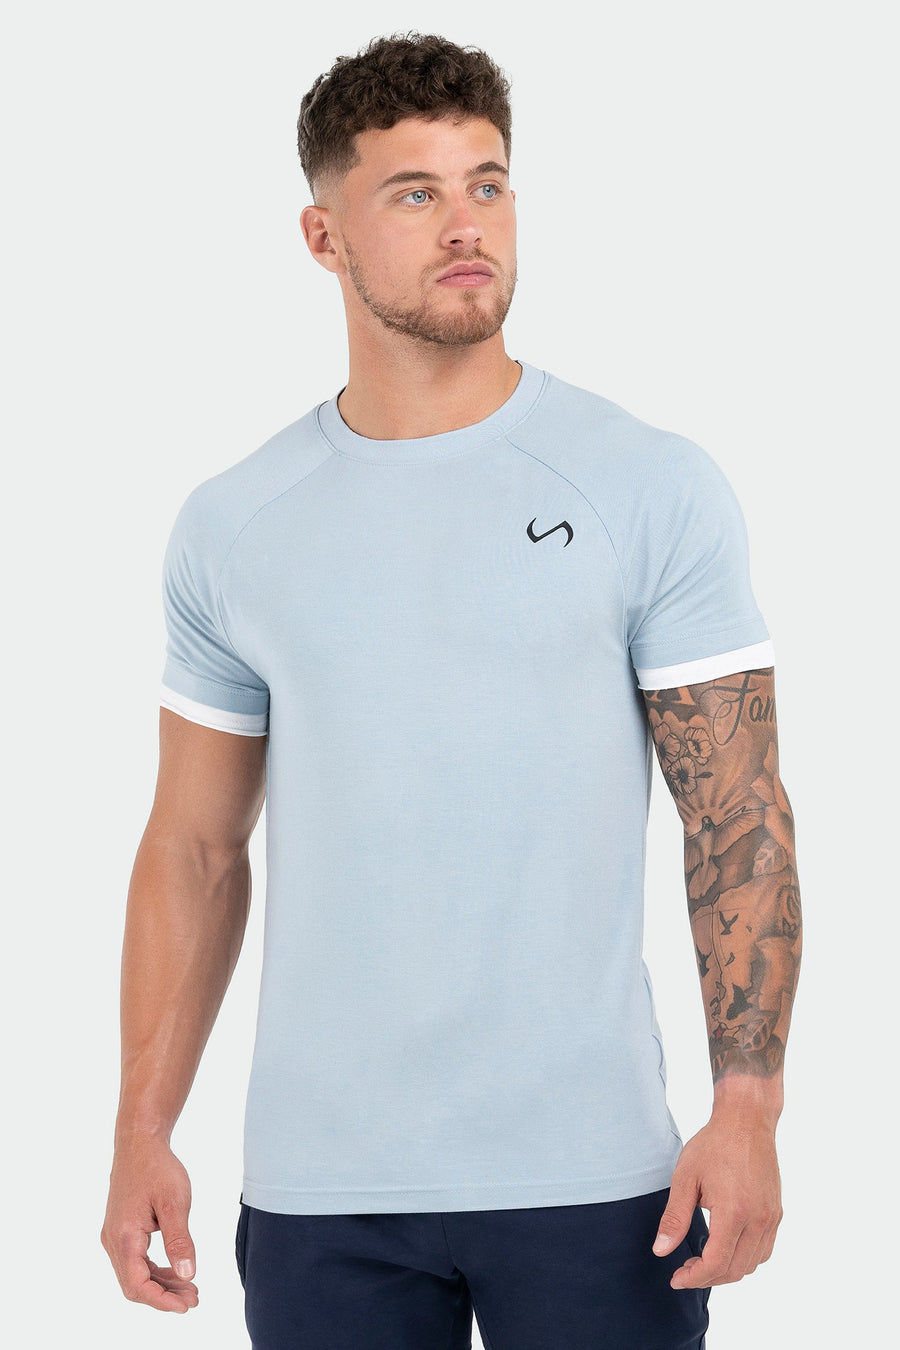 TLF Air-Flex Classic Tee - Mens Modal T Shirt - Blue - 1